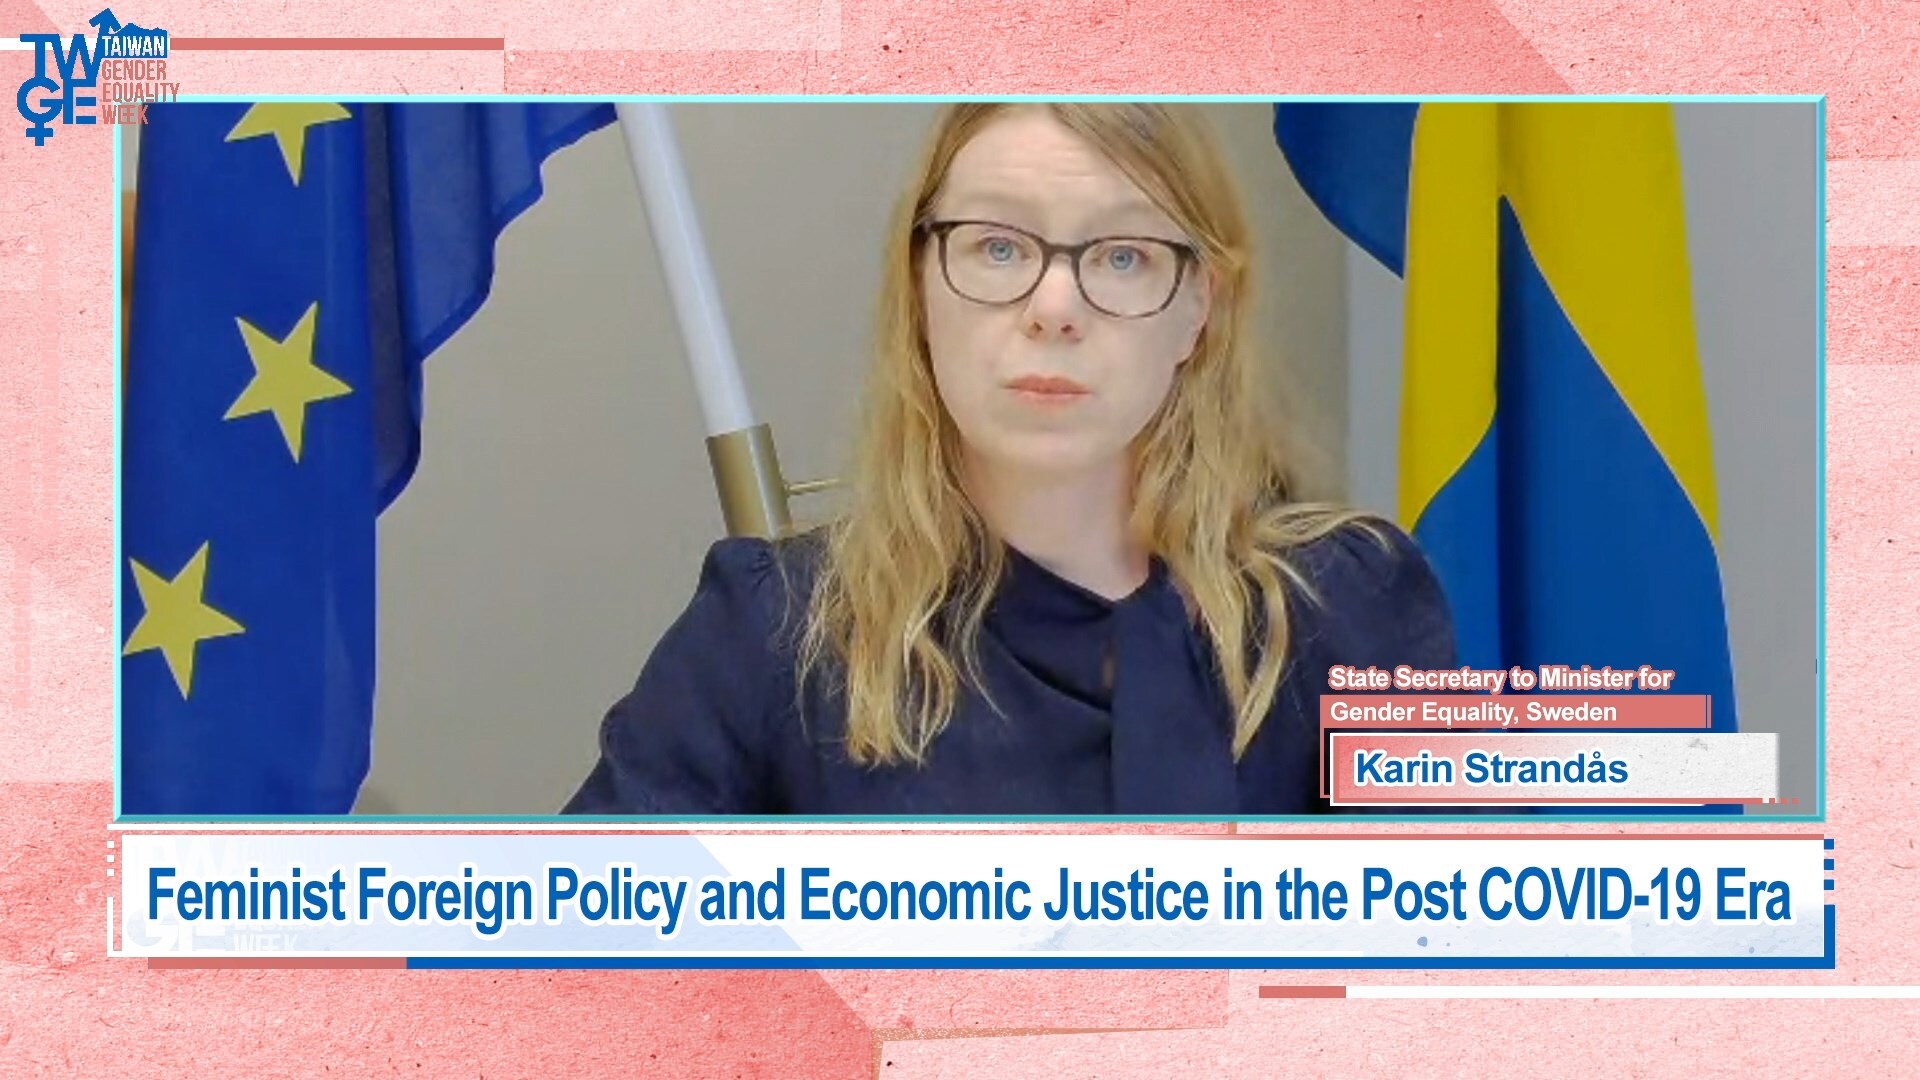 瑞典性別平等部政務次長Karin Strandås演講「後疫情時代的女性主義外交政策及經濟正義」。